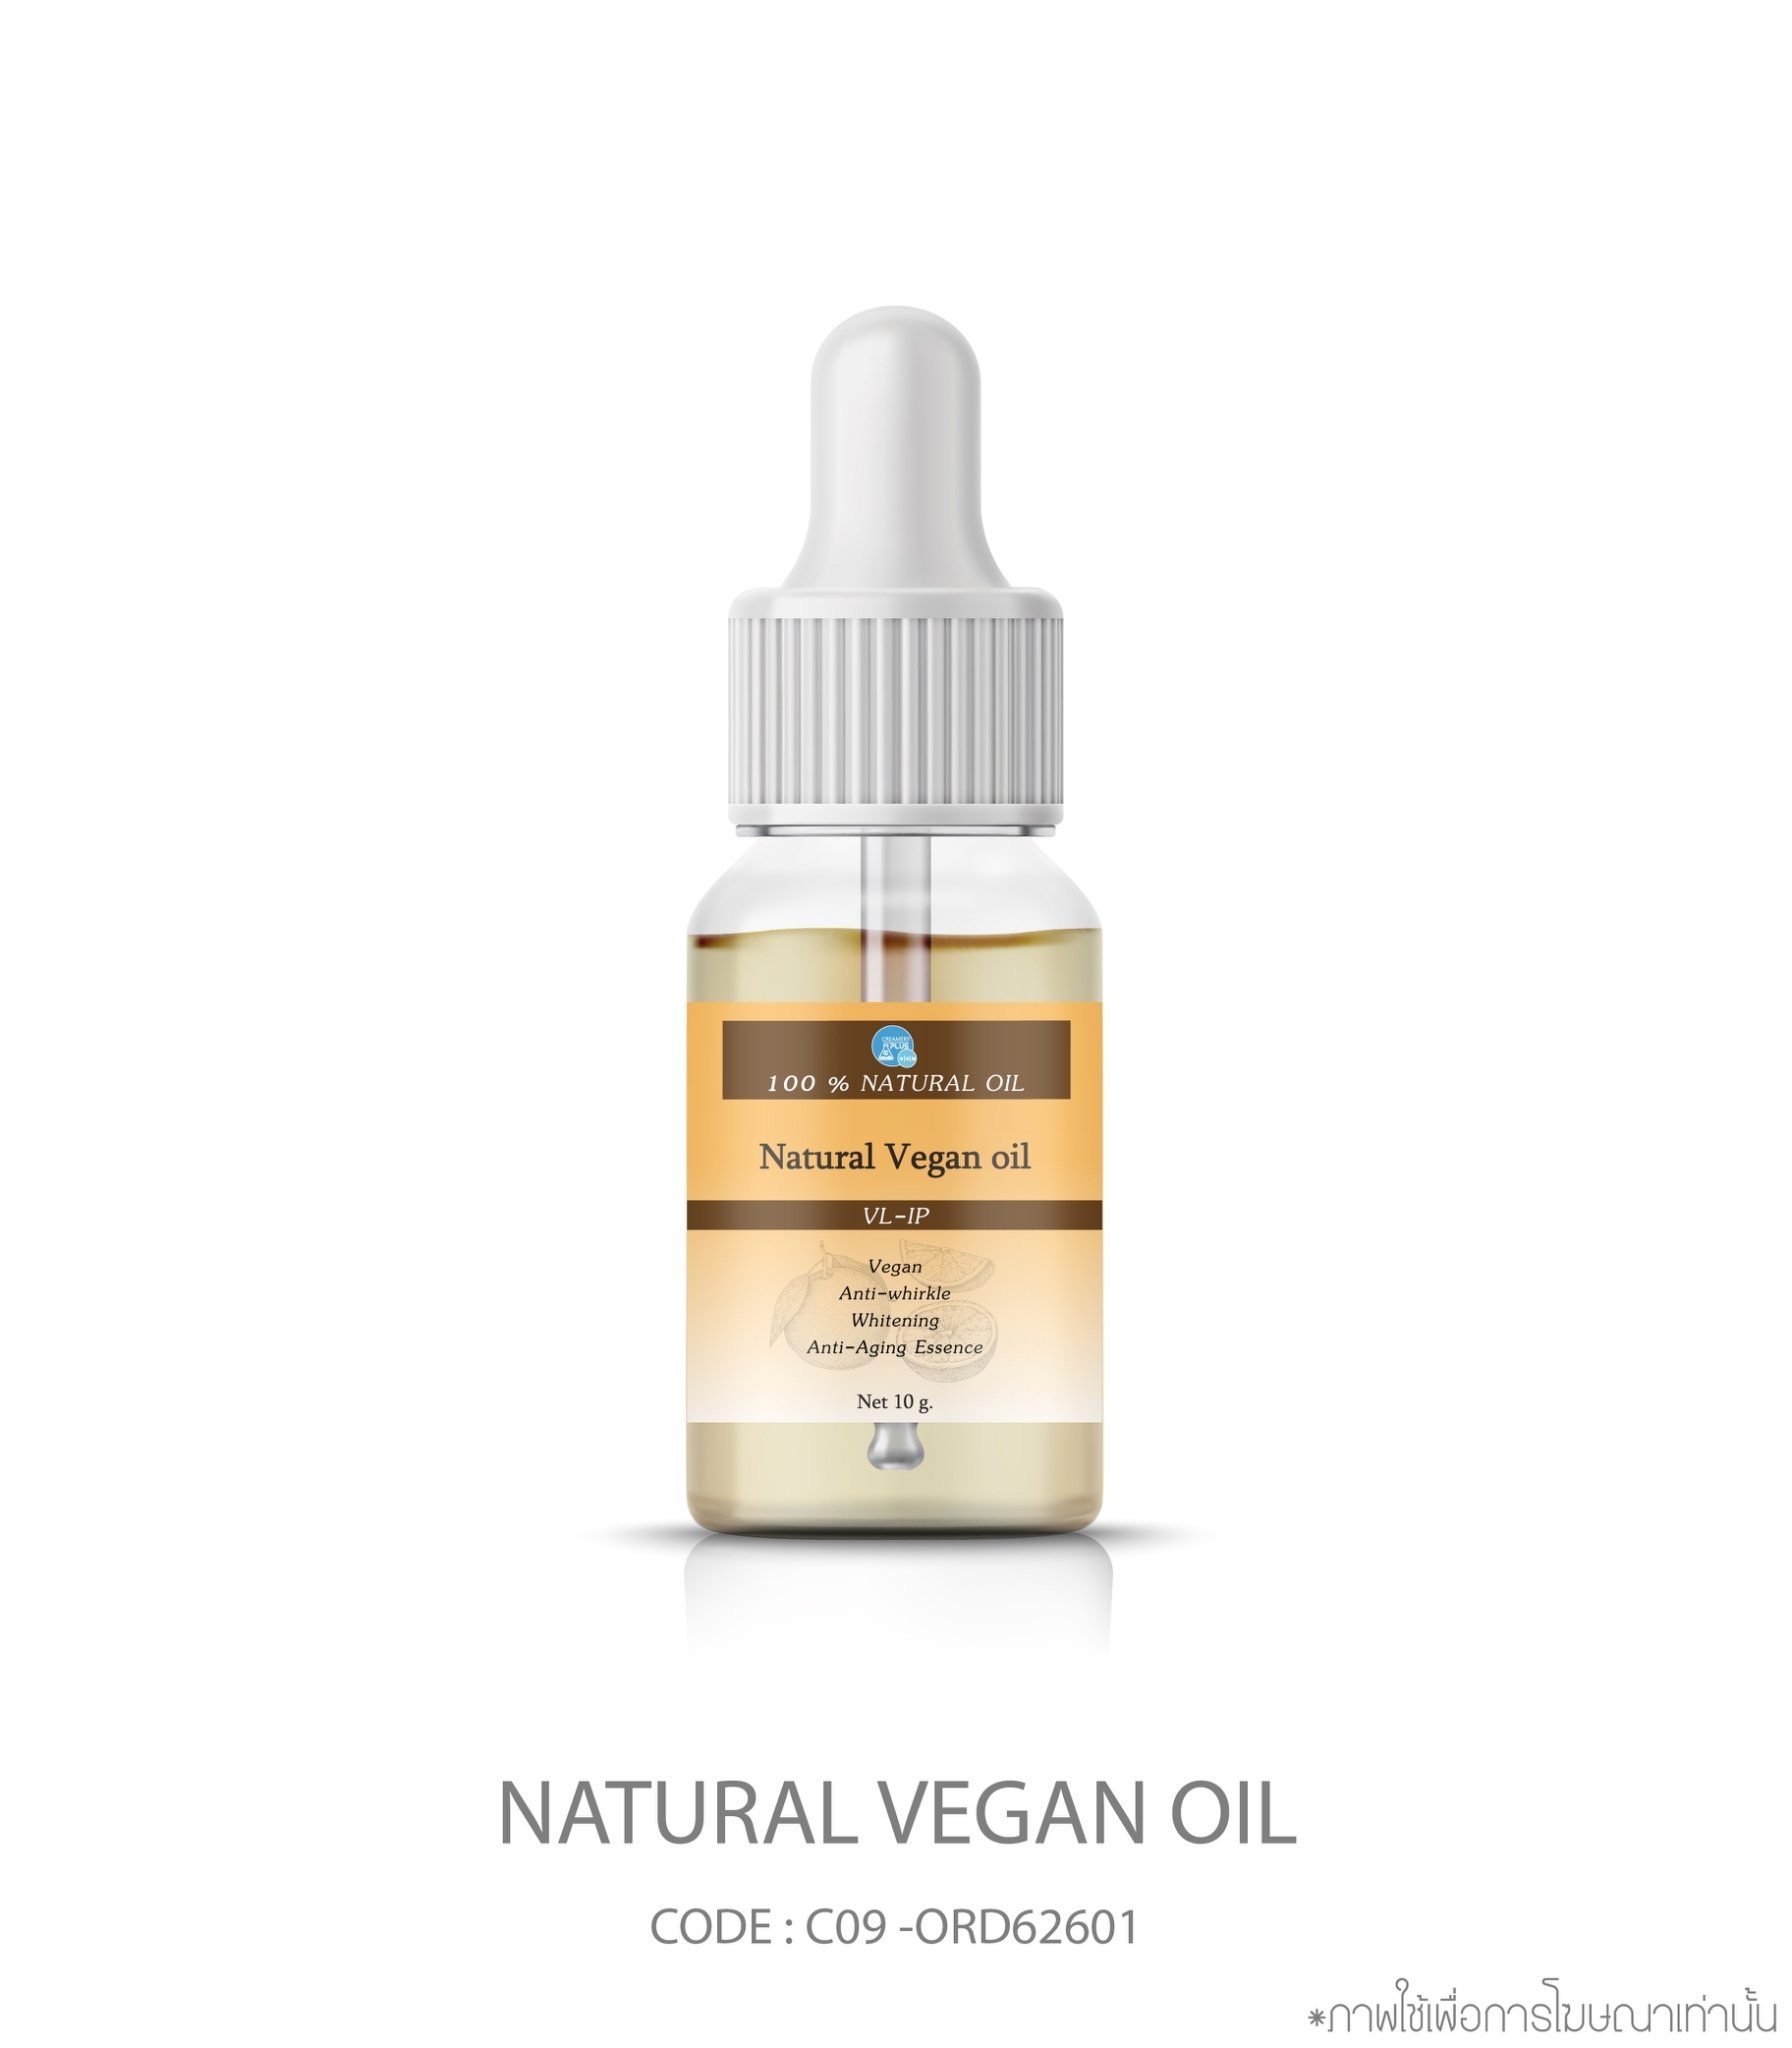 Natural Vegan oil Anti-Aging Essence